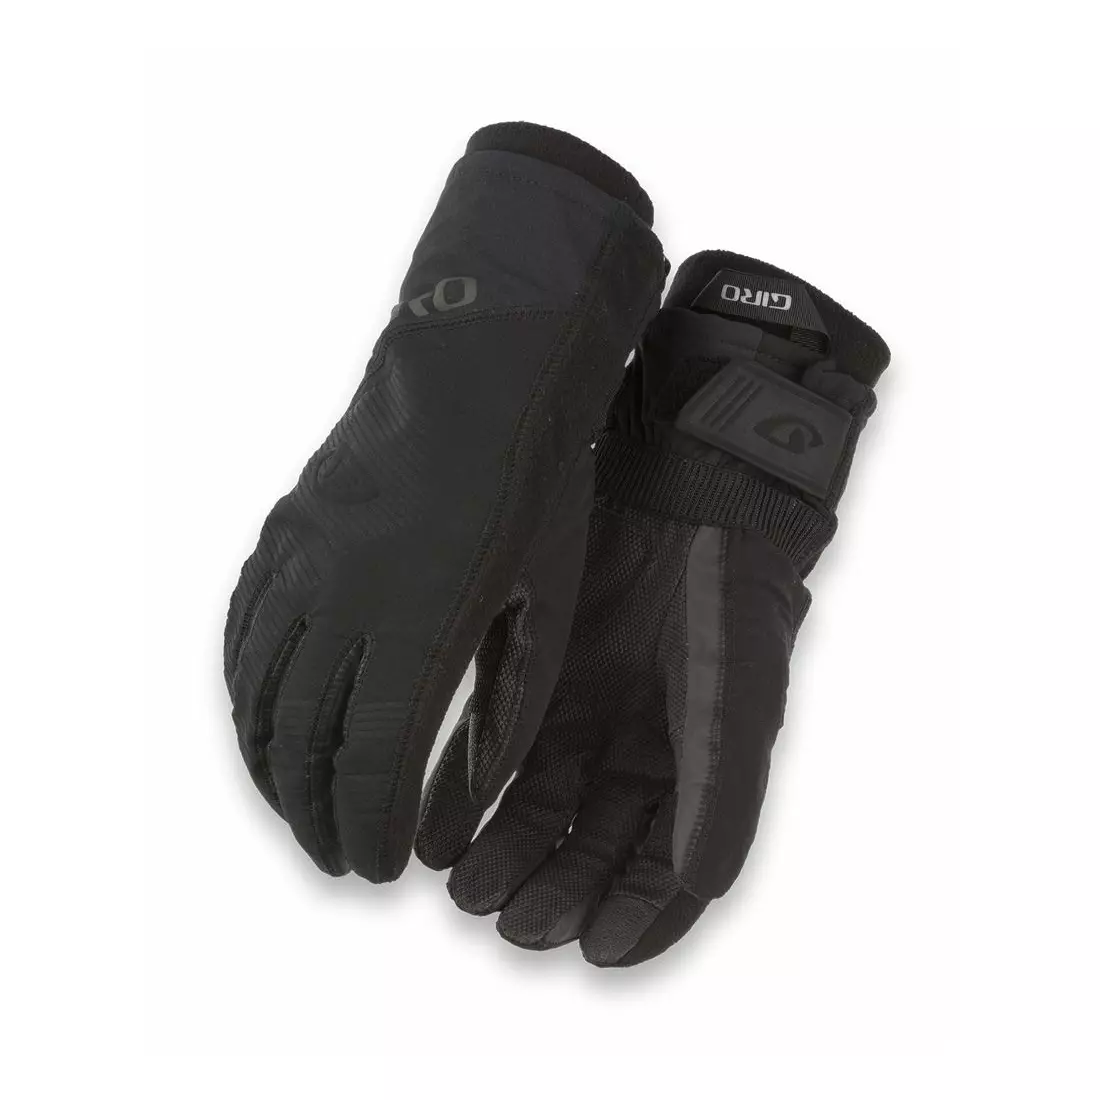 GIRO zimní cyklistické rukavice PROOF black GR-7097446